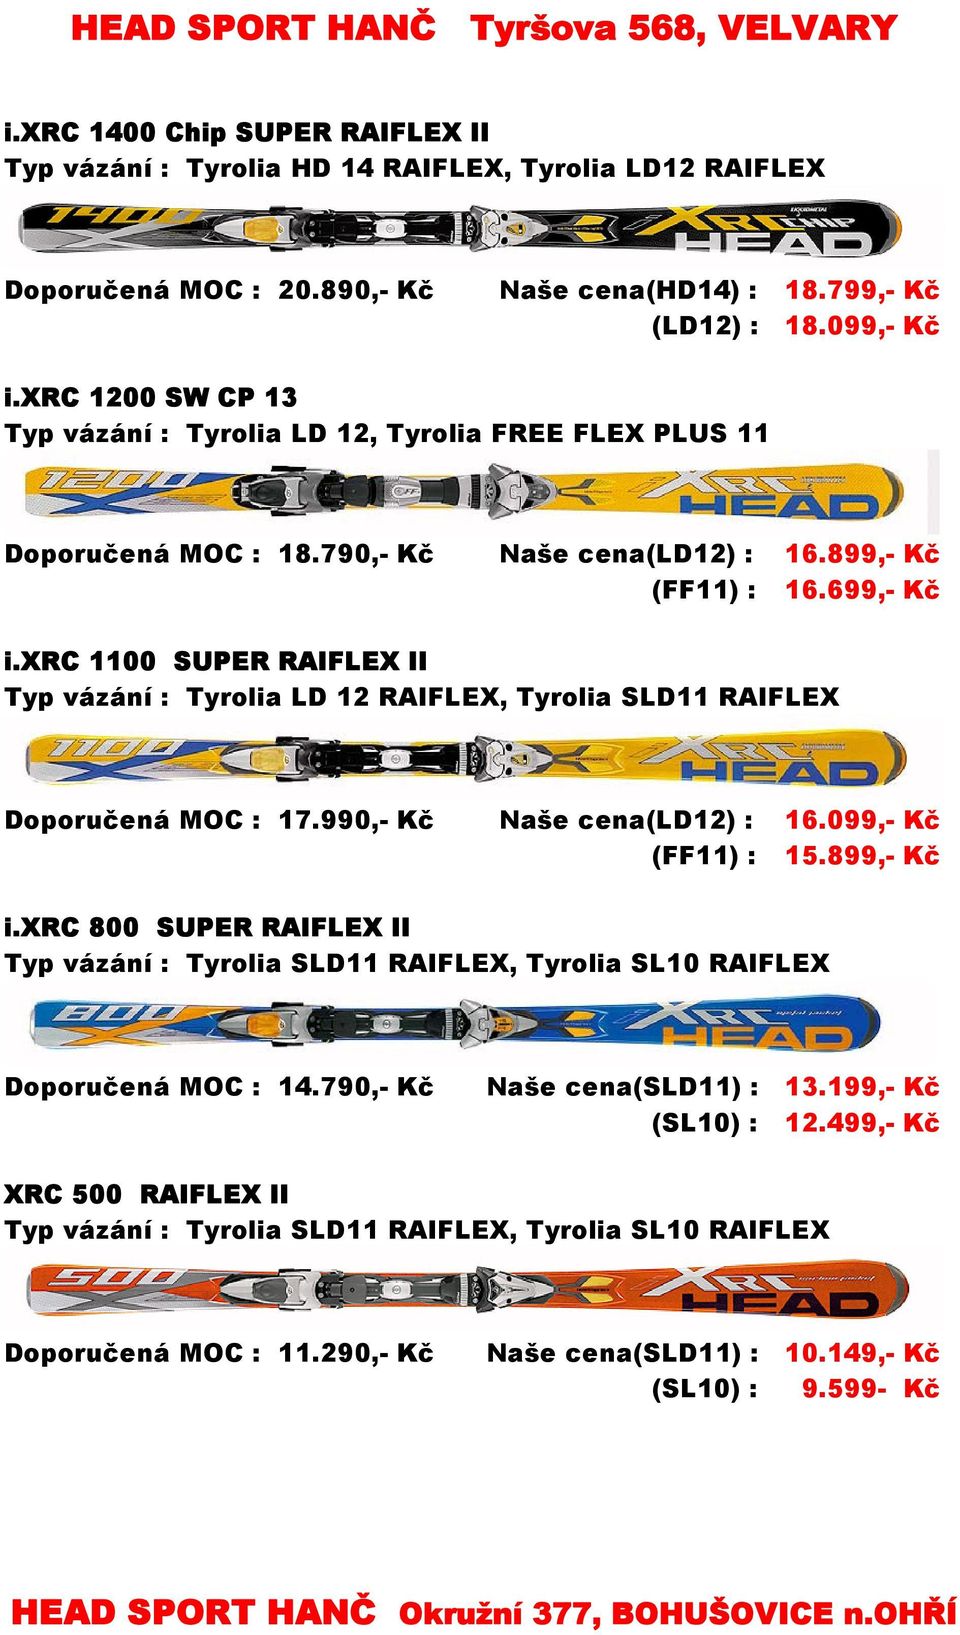 xrc 1100 SUPER RAIFLEX II Typ vázání : Tyrolia LD 12 RAIFLEX, Tyrolia SLD11 RAIFLEX Doporučená MOC : 17.990,- Kč Naše cena(ld12) : 16.099,- Kč (FF11) : 15.899,- Kč i.